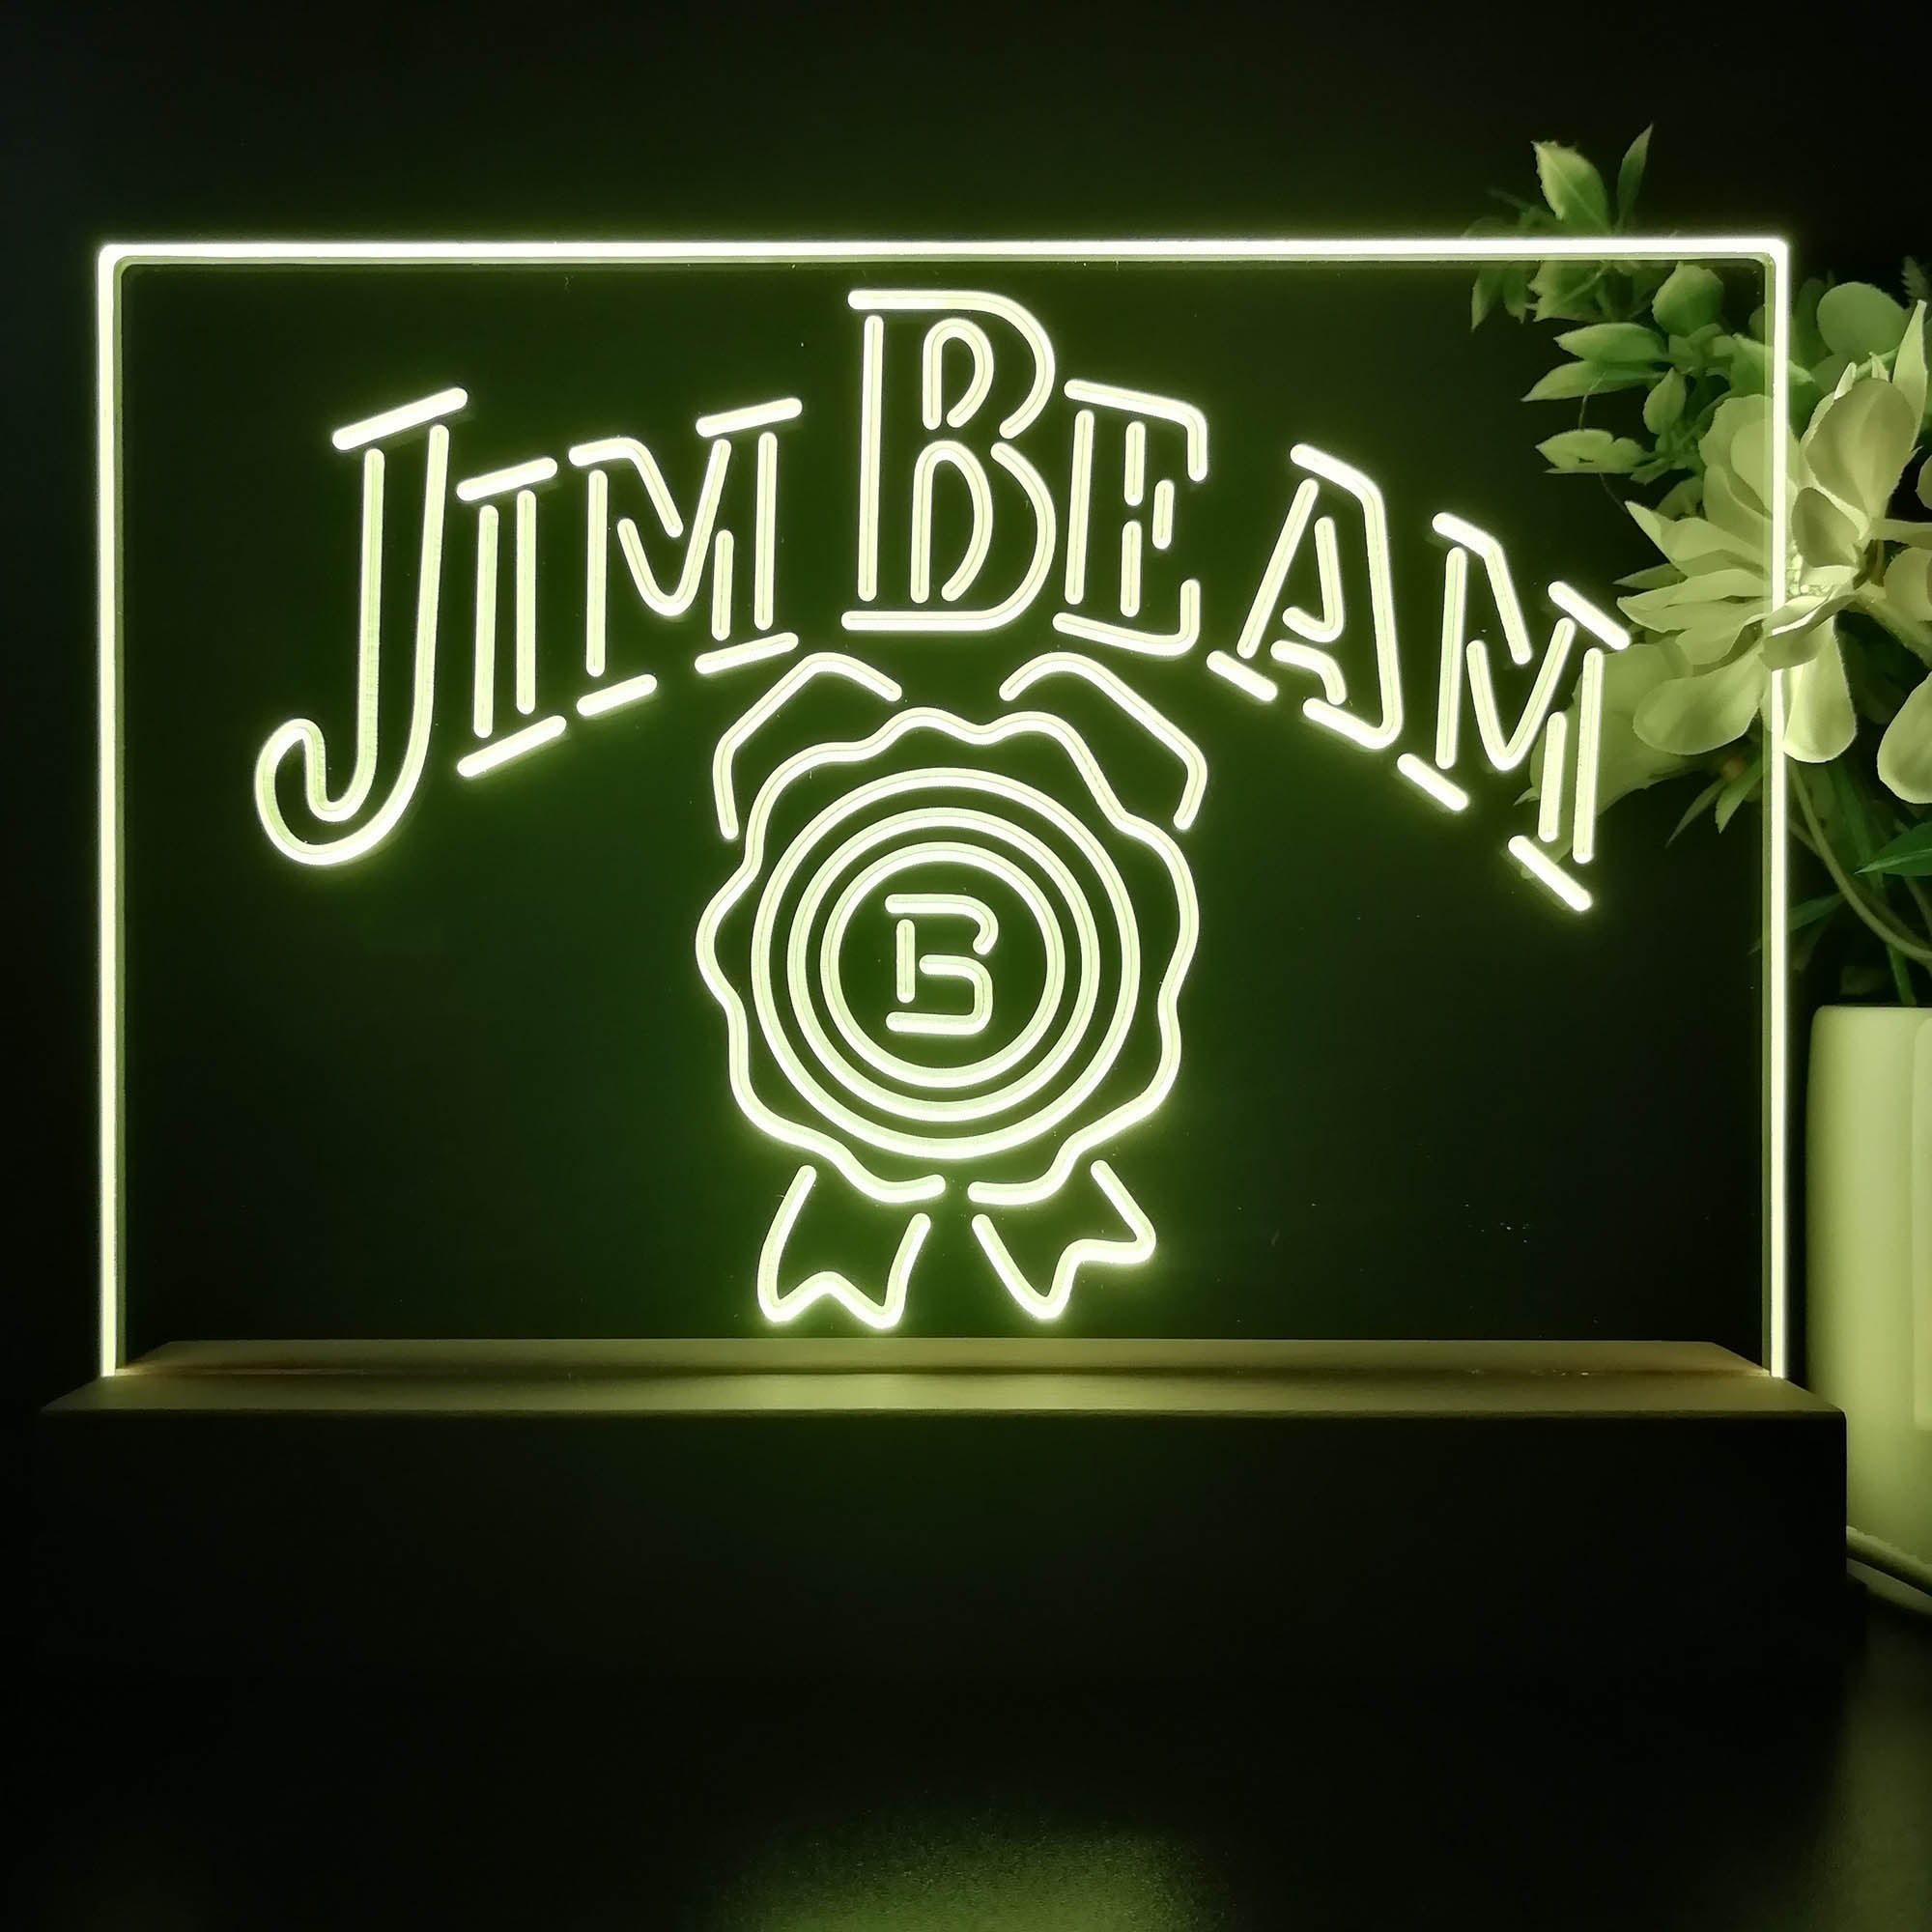 Jim Beam Beer Pub Neon Sign Pub Bar Lamp